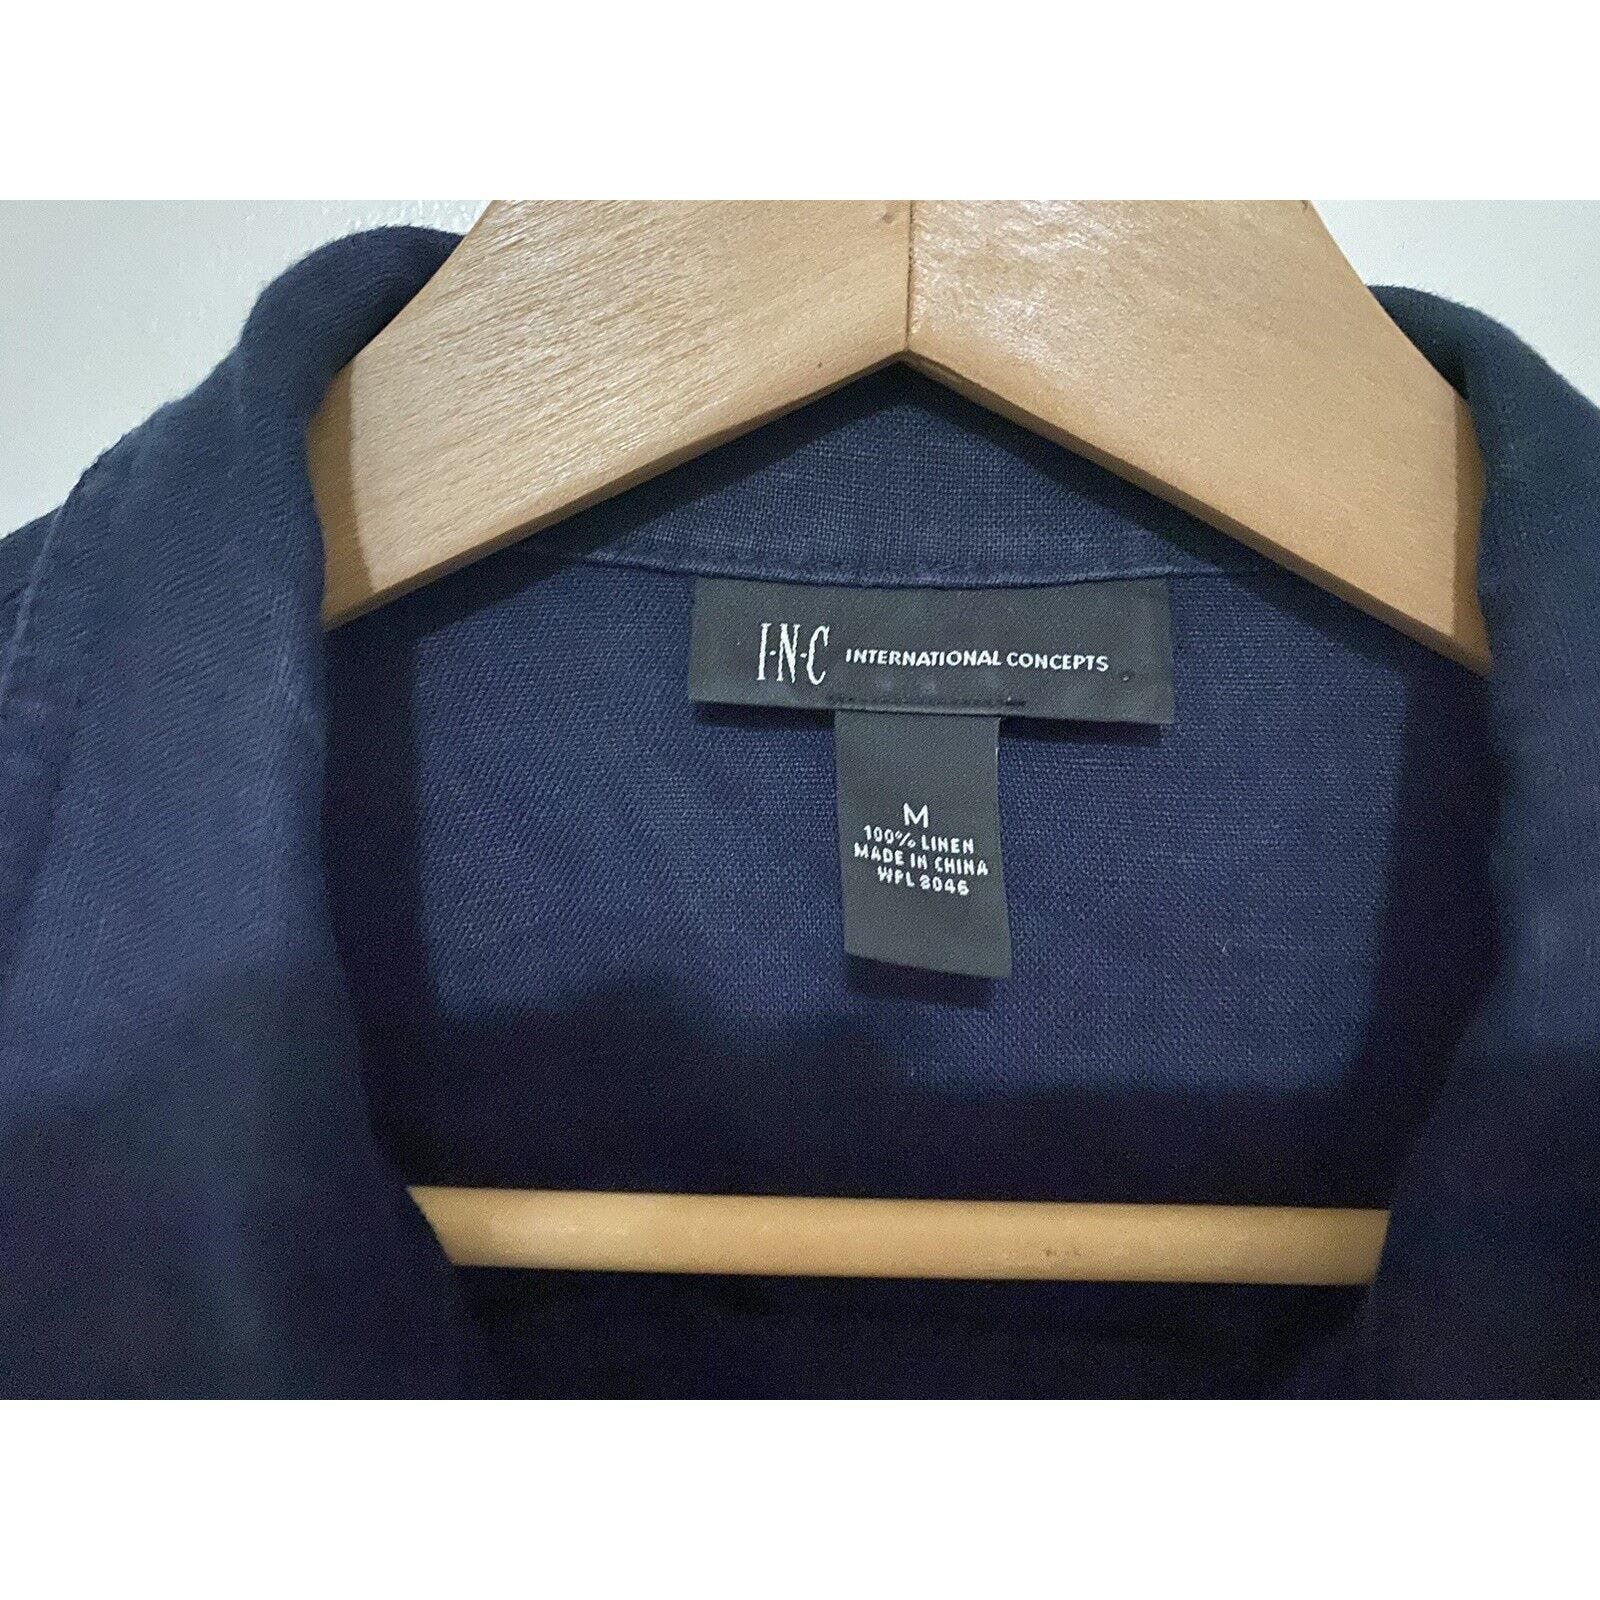 Inc INC Concepts Jacket Women Sz Med Button Up Coat Blue Linen Size M / US 6-8 / IT 42-44 - 3 Thumbnail